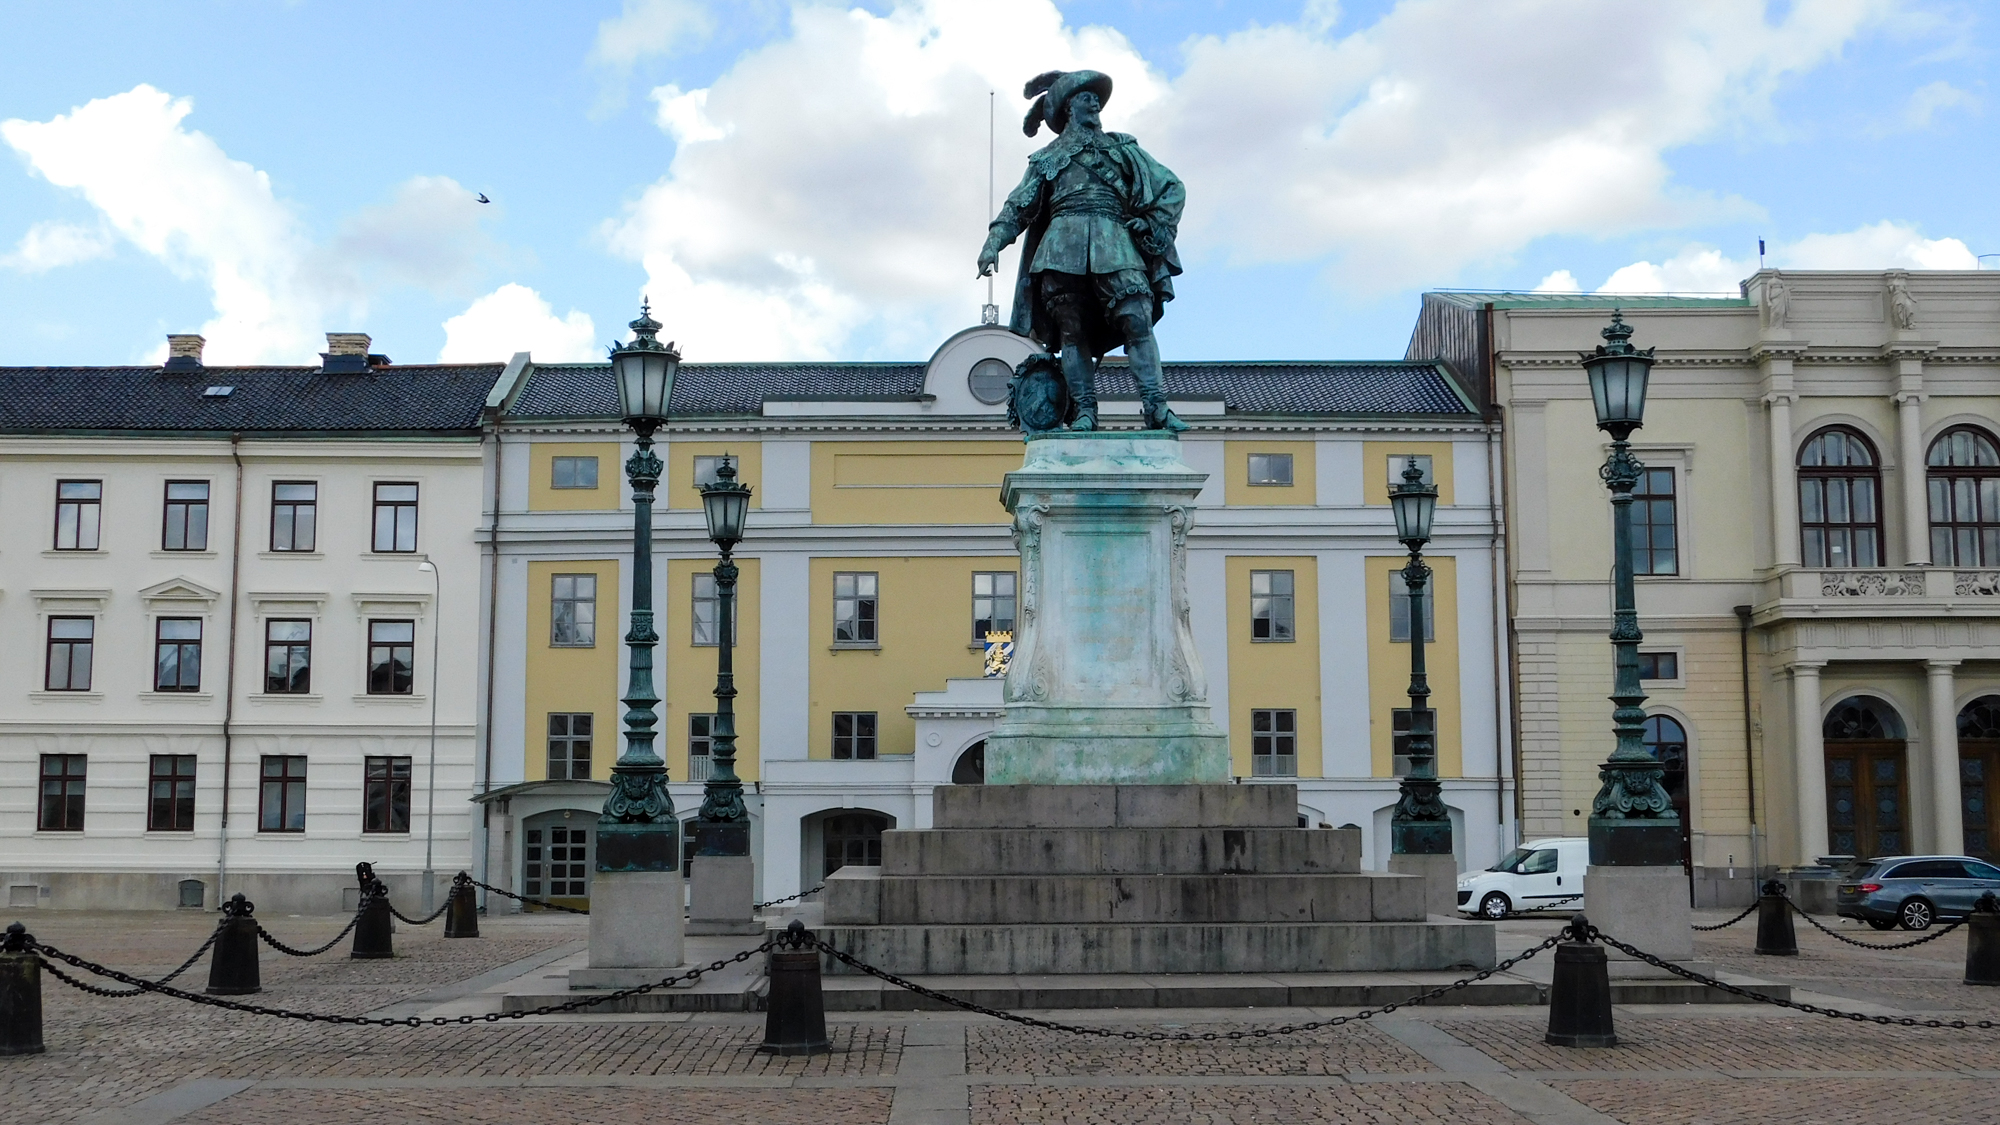 Socha kráľa Gustava Adolfa, zakľadateľa Göteborgu v 17. storočí.